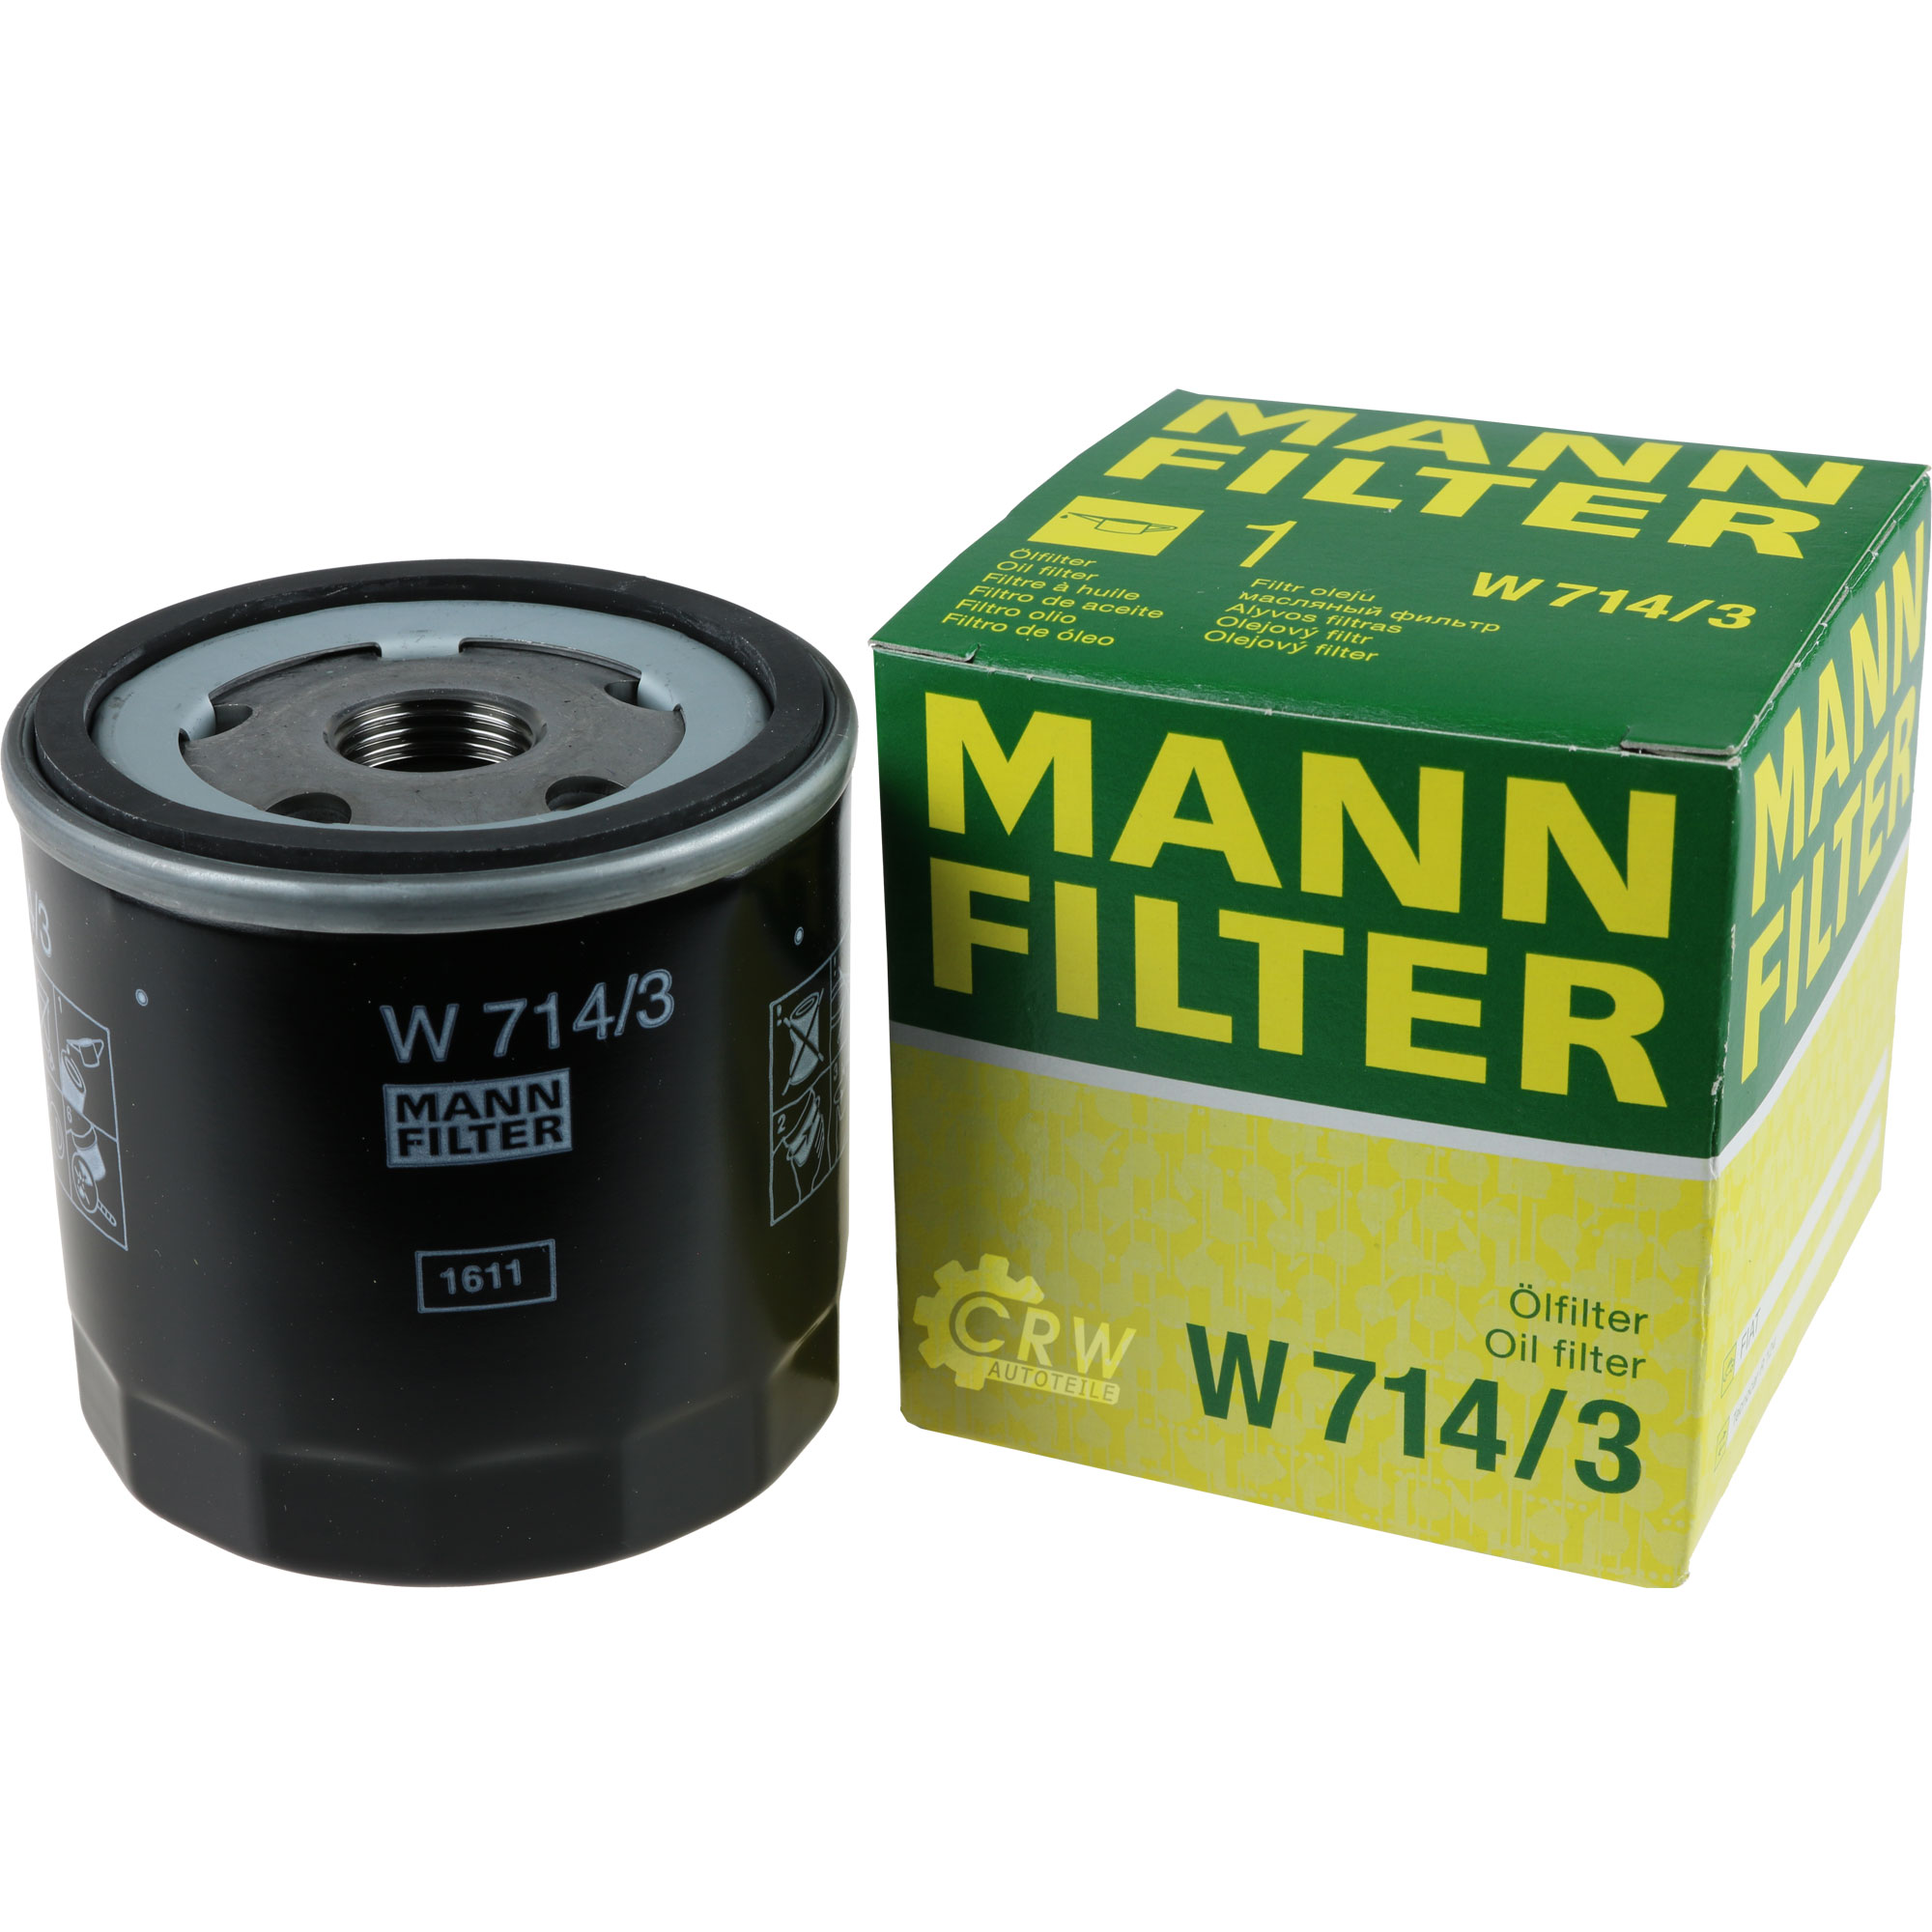 MANN-FILTER Ölfilter W 714/3 Oil Filter